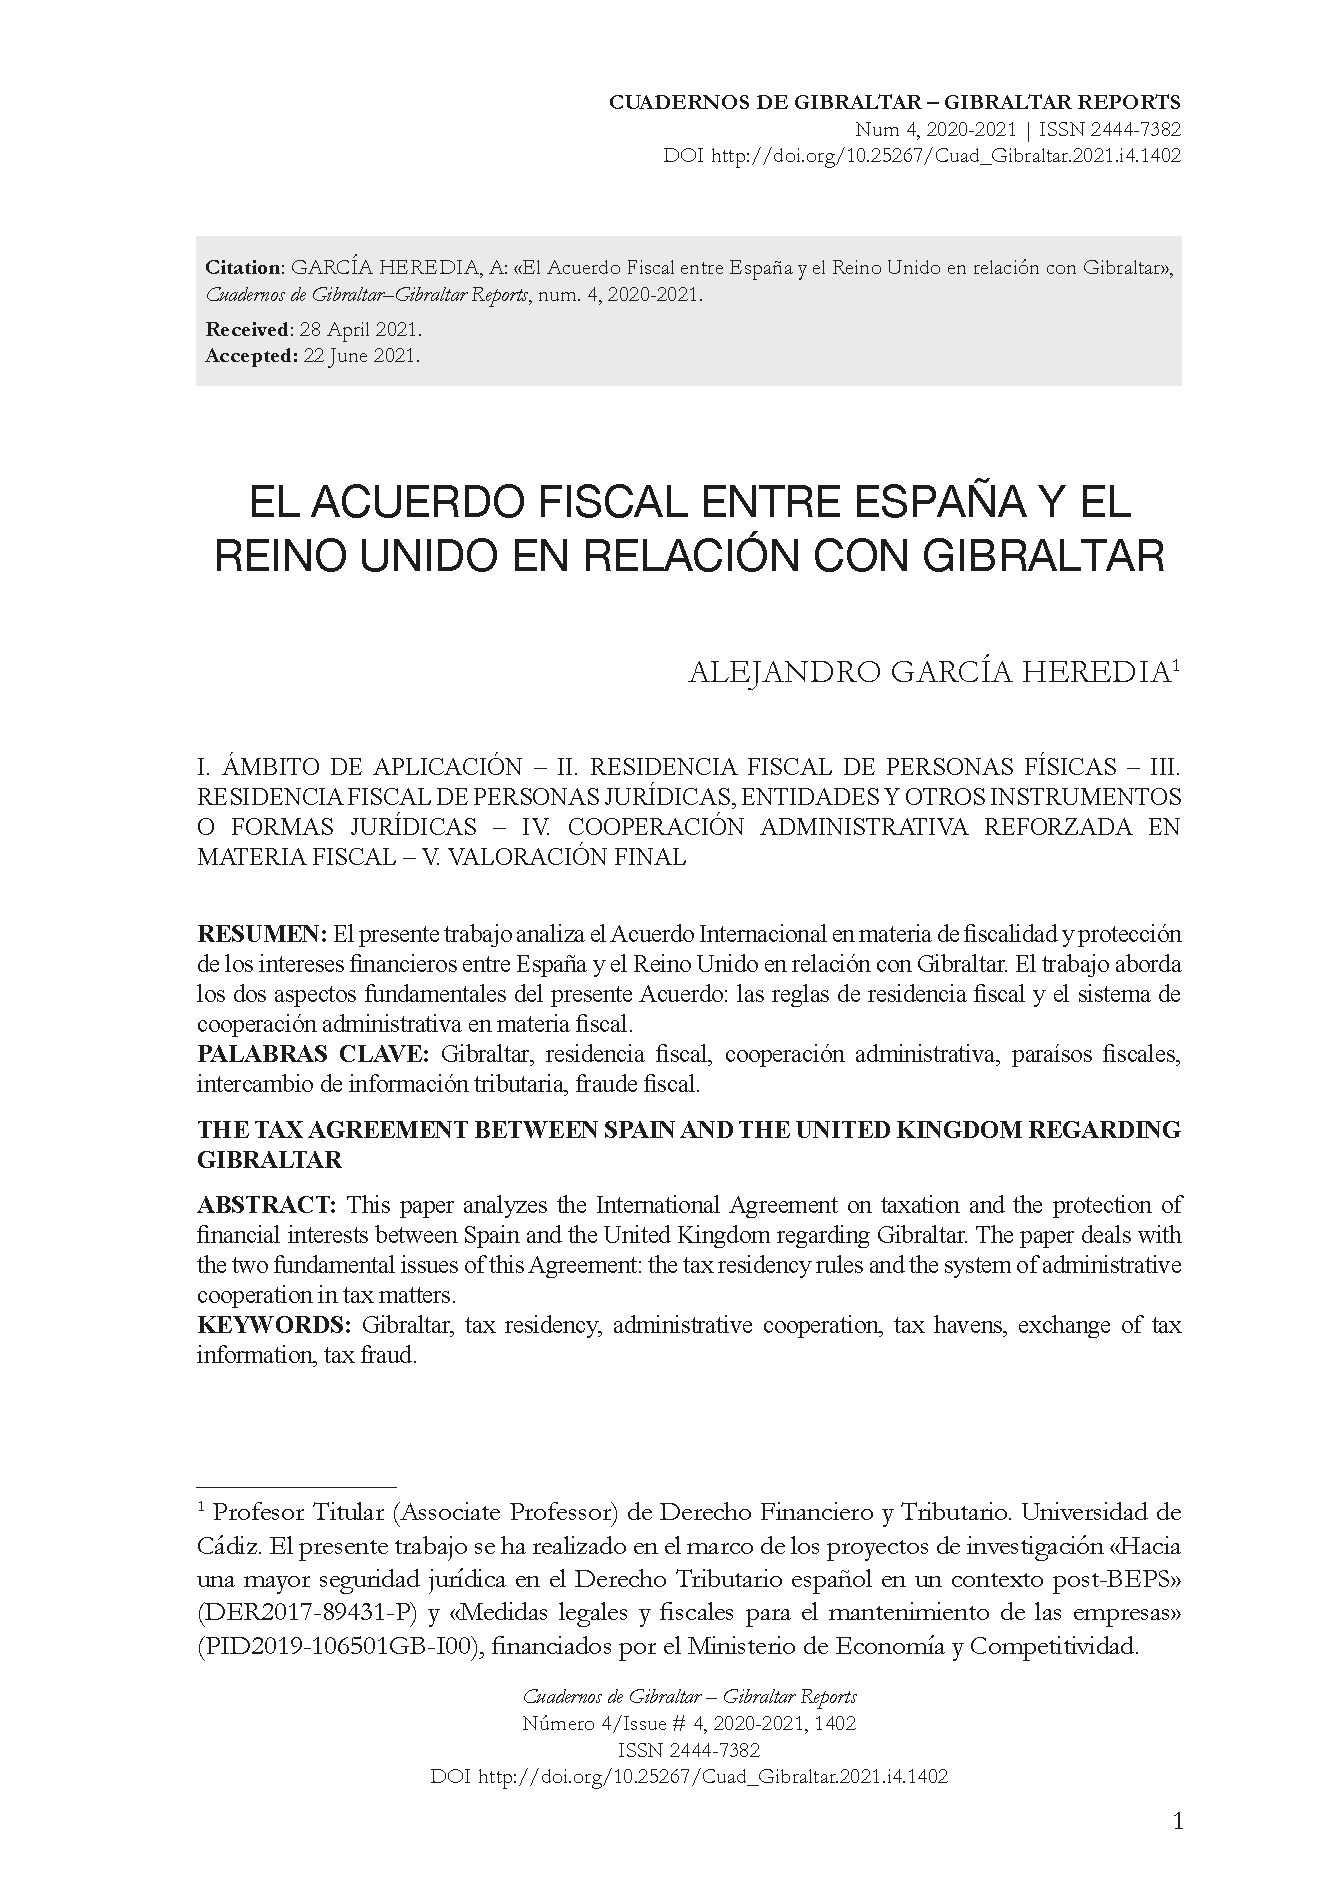 El Acuerdo Fiscal entre España y el Reino Unido en relación con Gibraltar